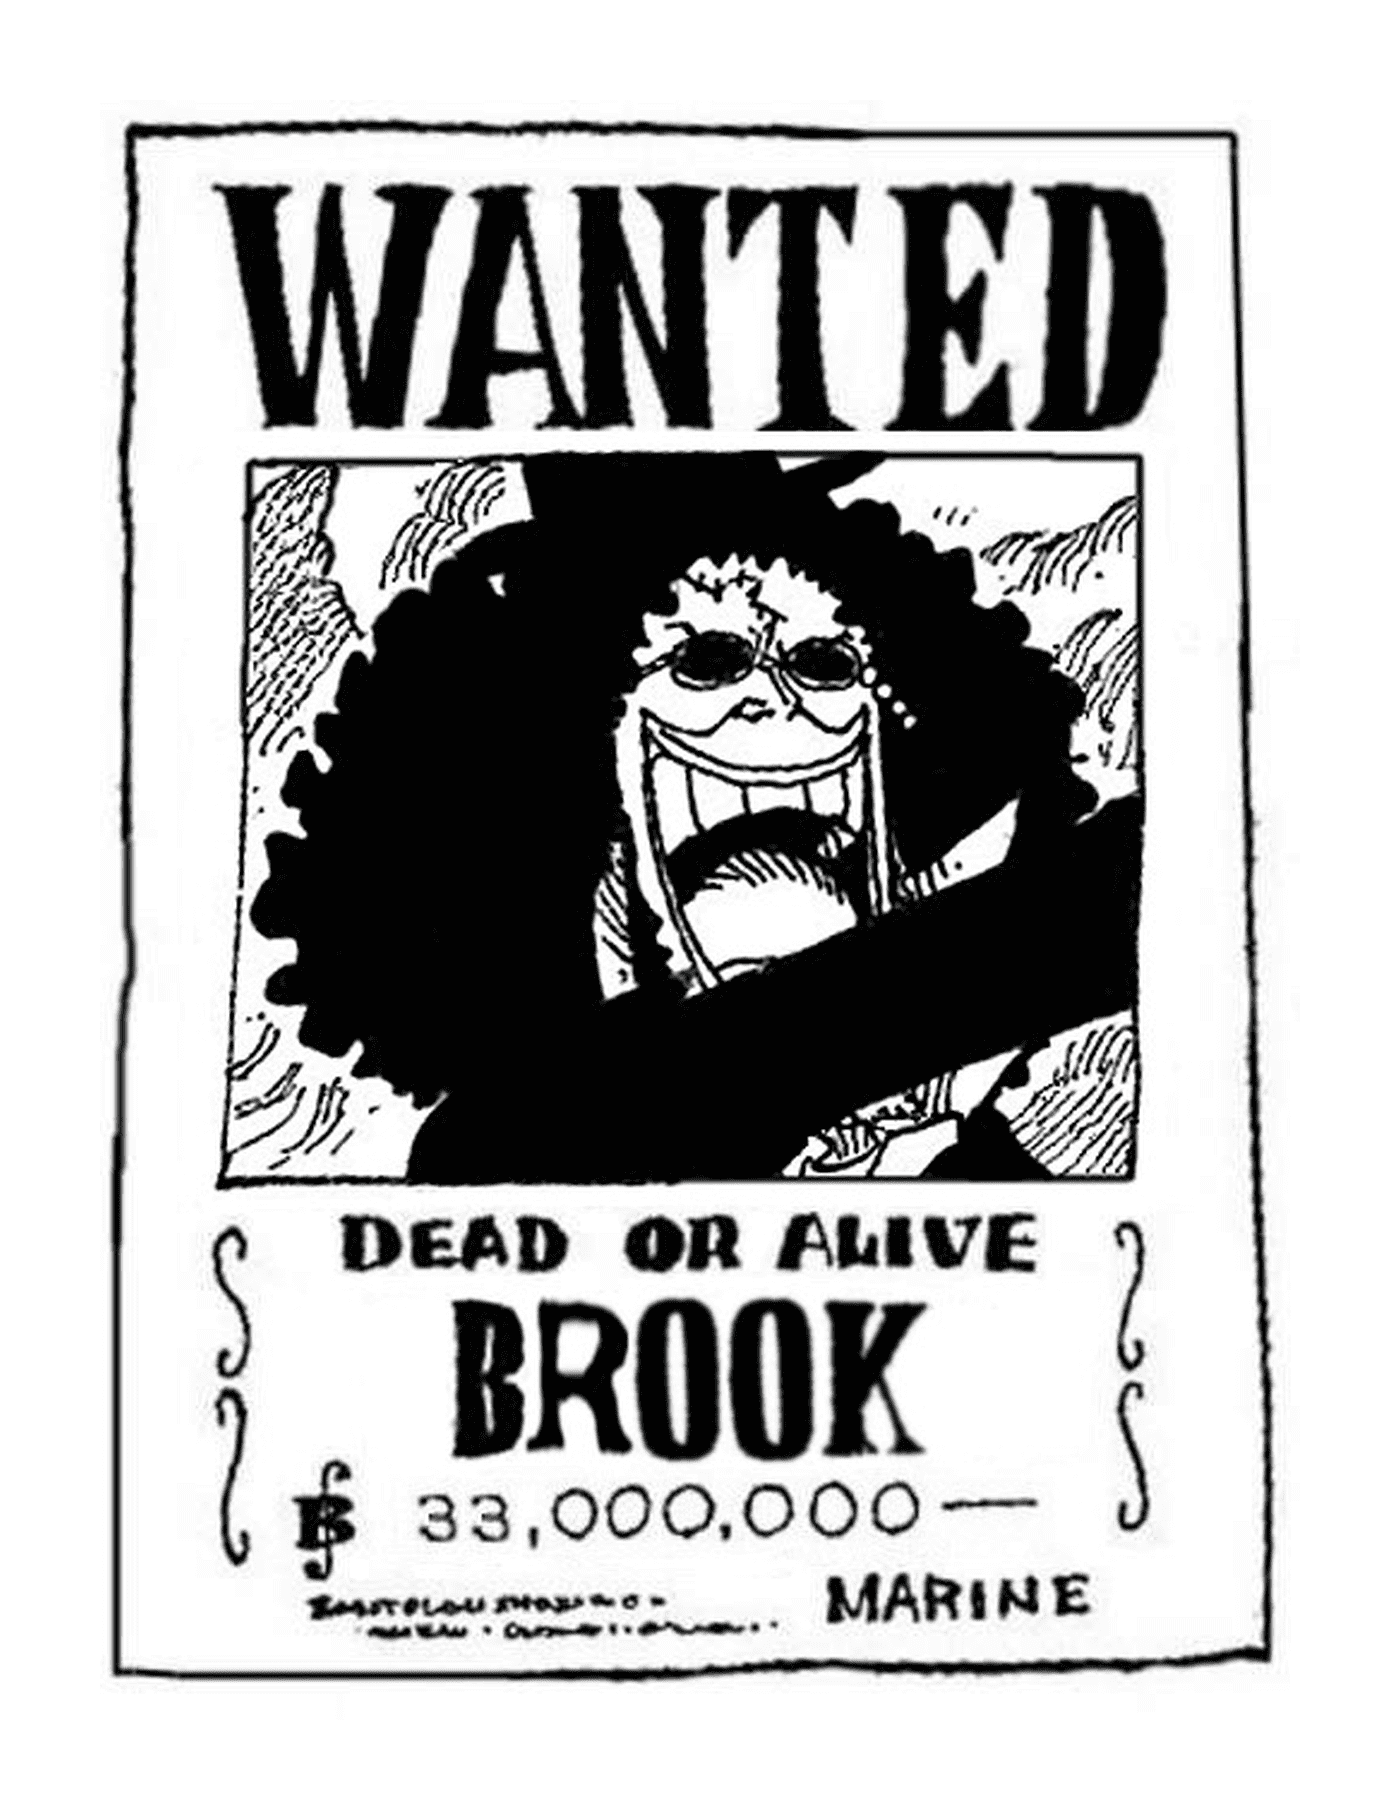  Voleva Brook, vivo o morto 